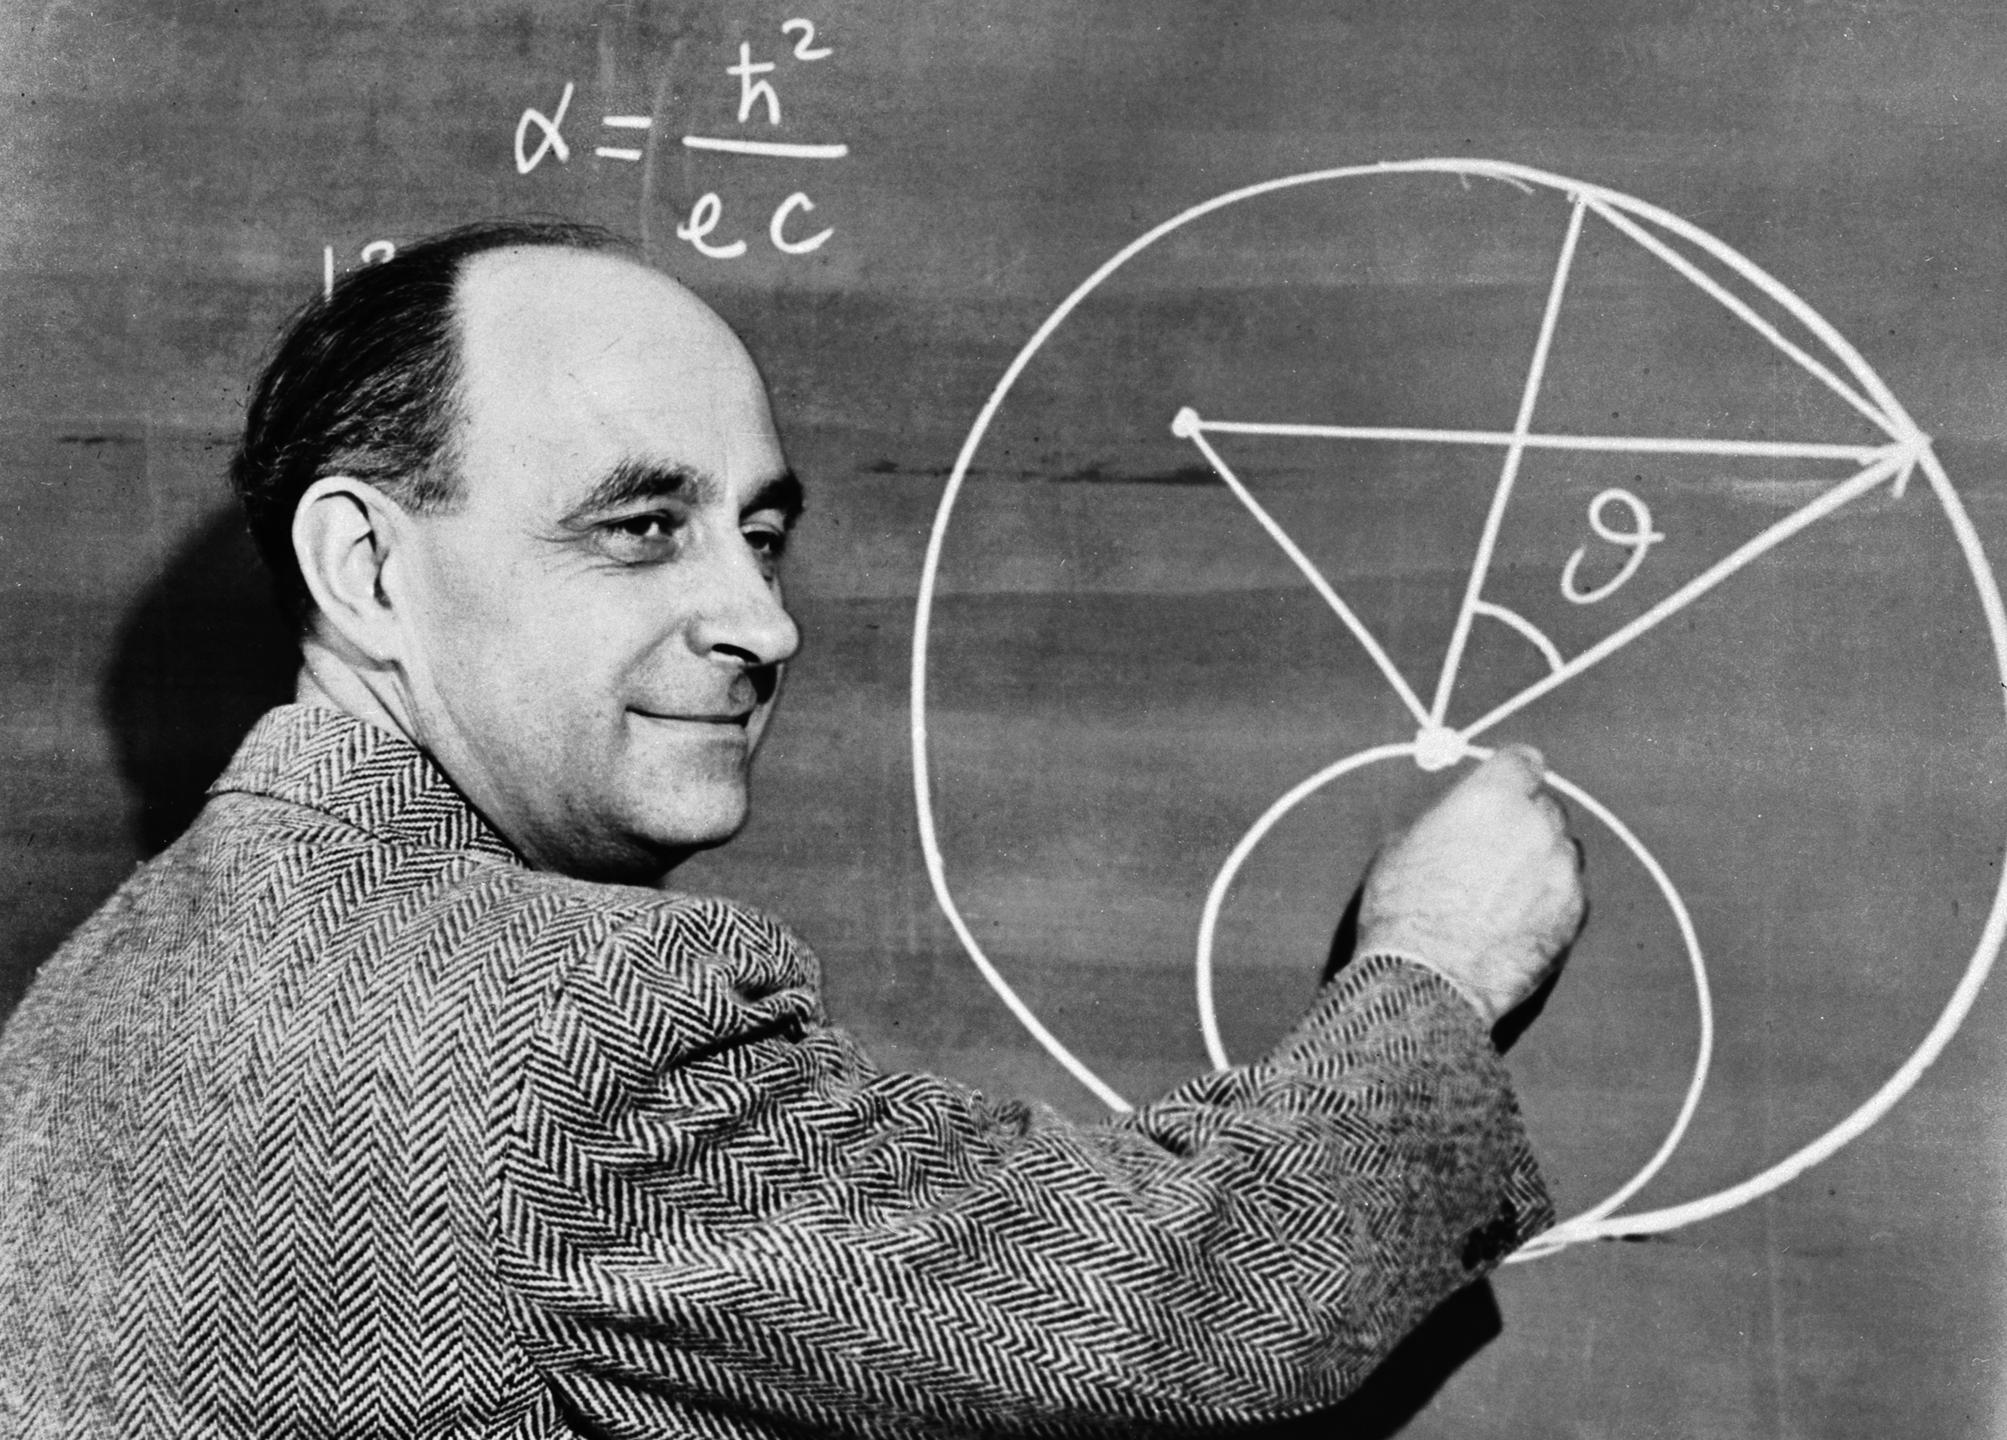 Enrico Fermi dans les années 40